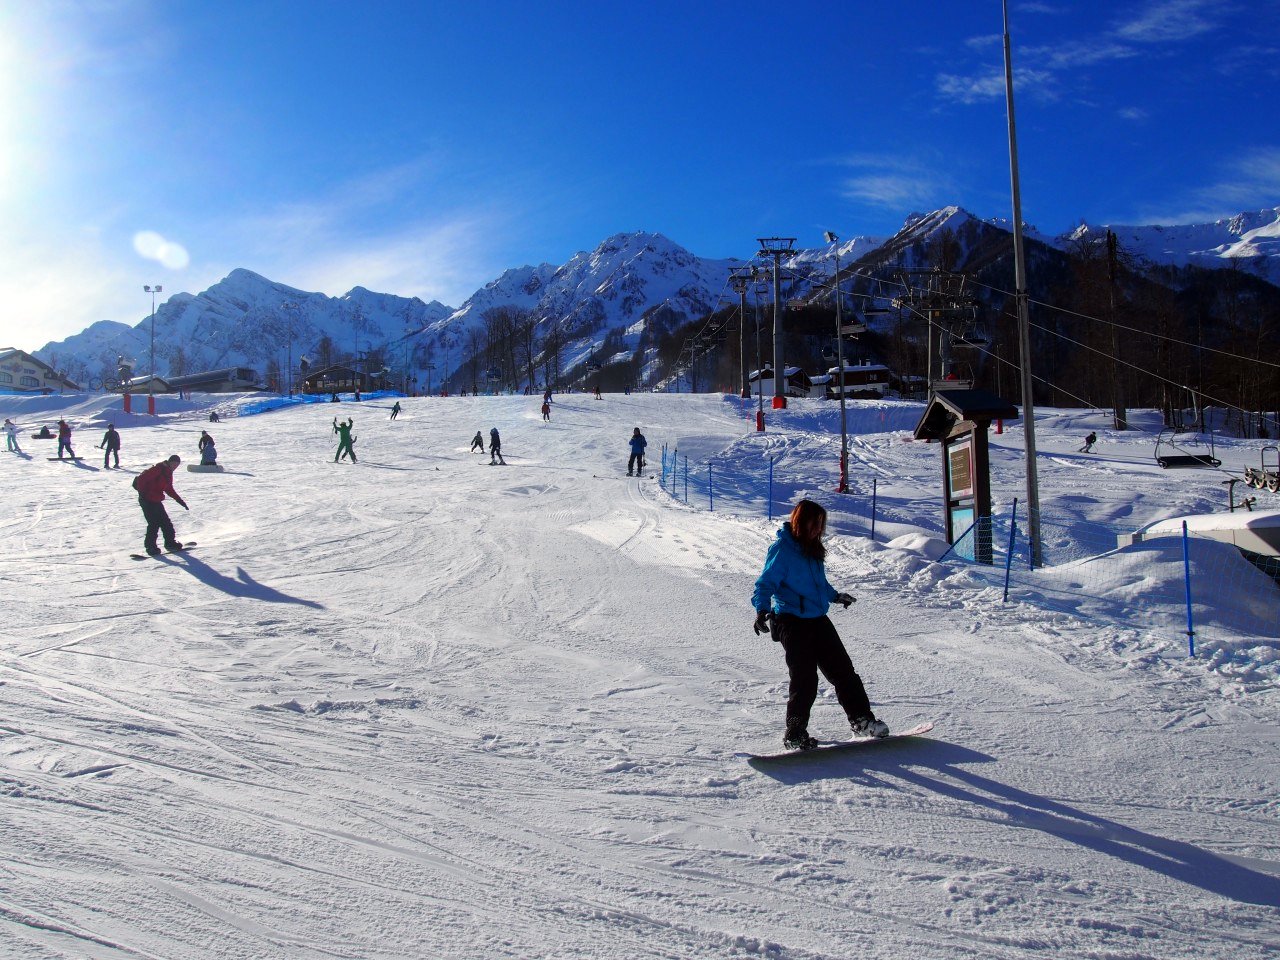 Бесплатные уроки по сноуборду проведут на курорте "Роза Хутор"